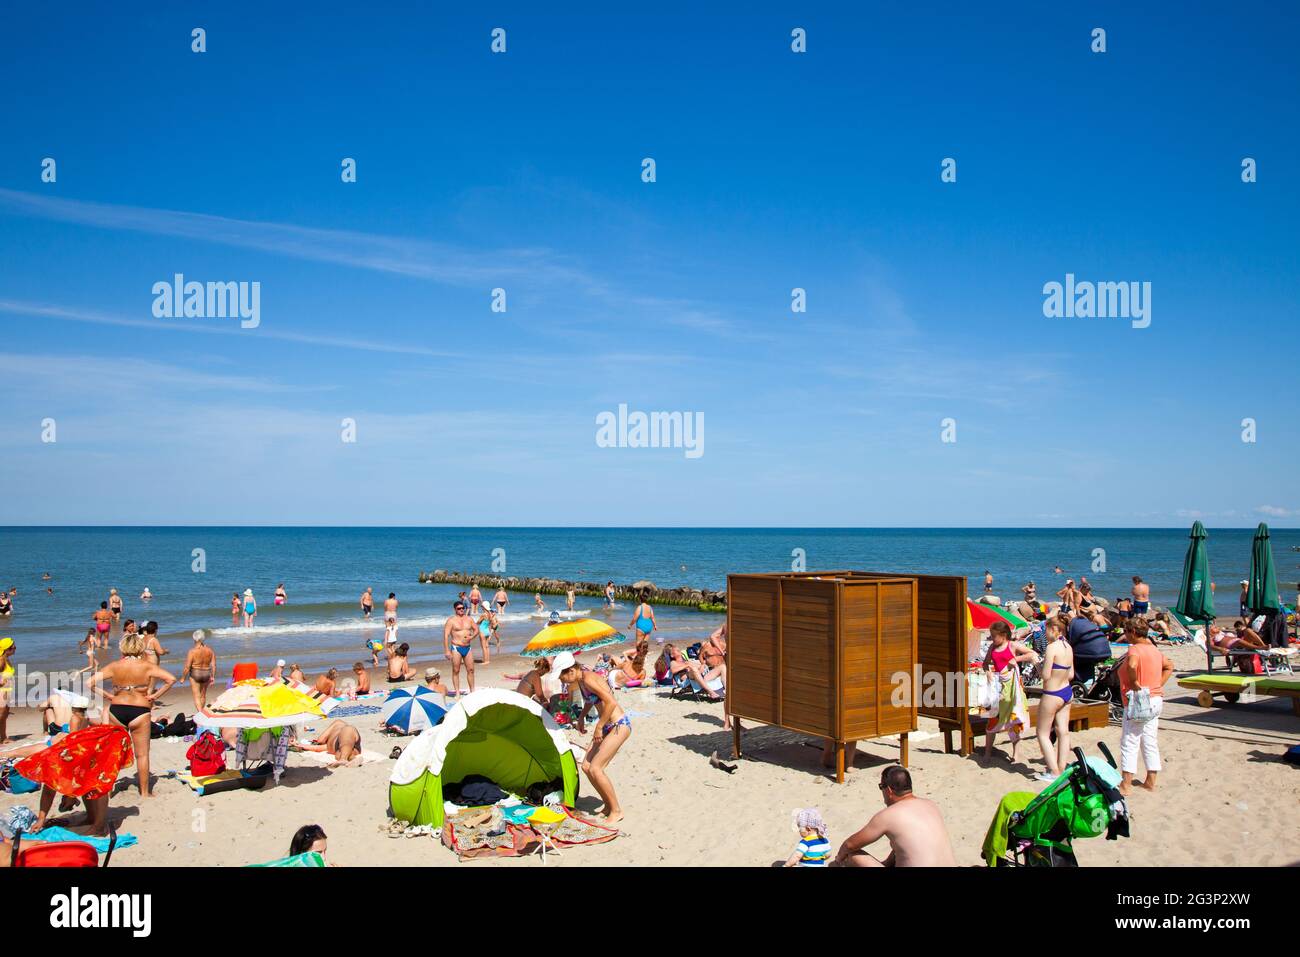 Zelenogradsk, Rusia - Agosto 17, 2017: una multitud de bañistas en la playa de Zelenogradsk situado en la costa del Mar Báltico, Rusia. Foto de stock